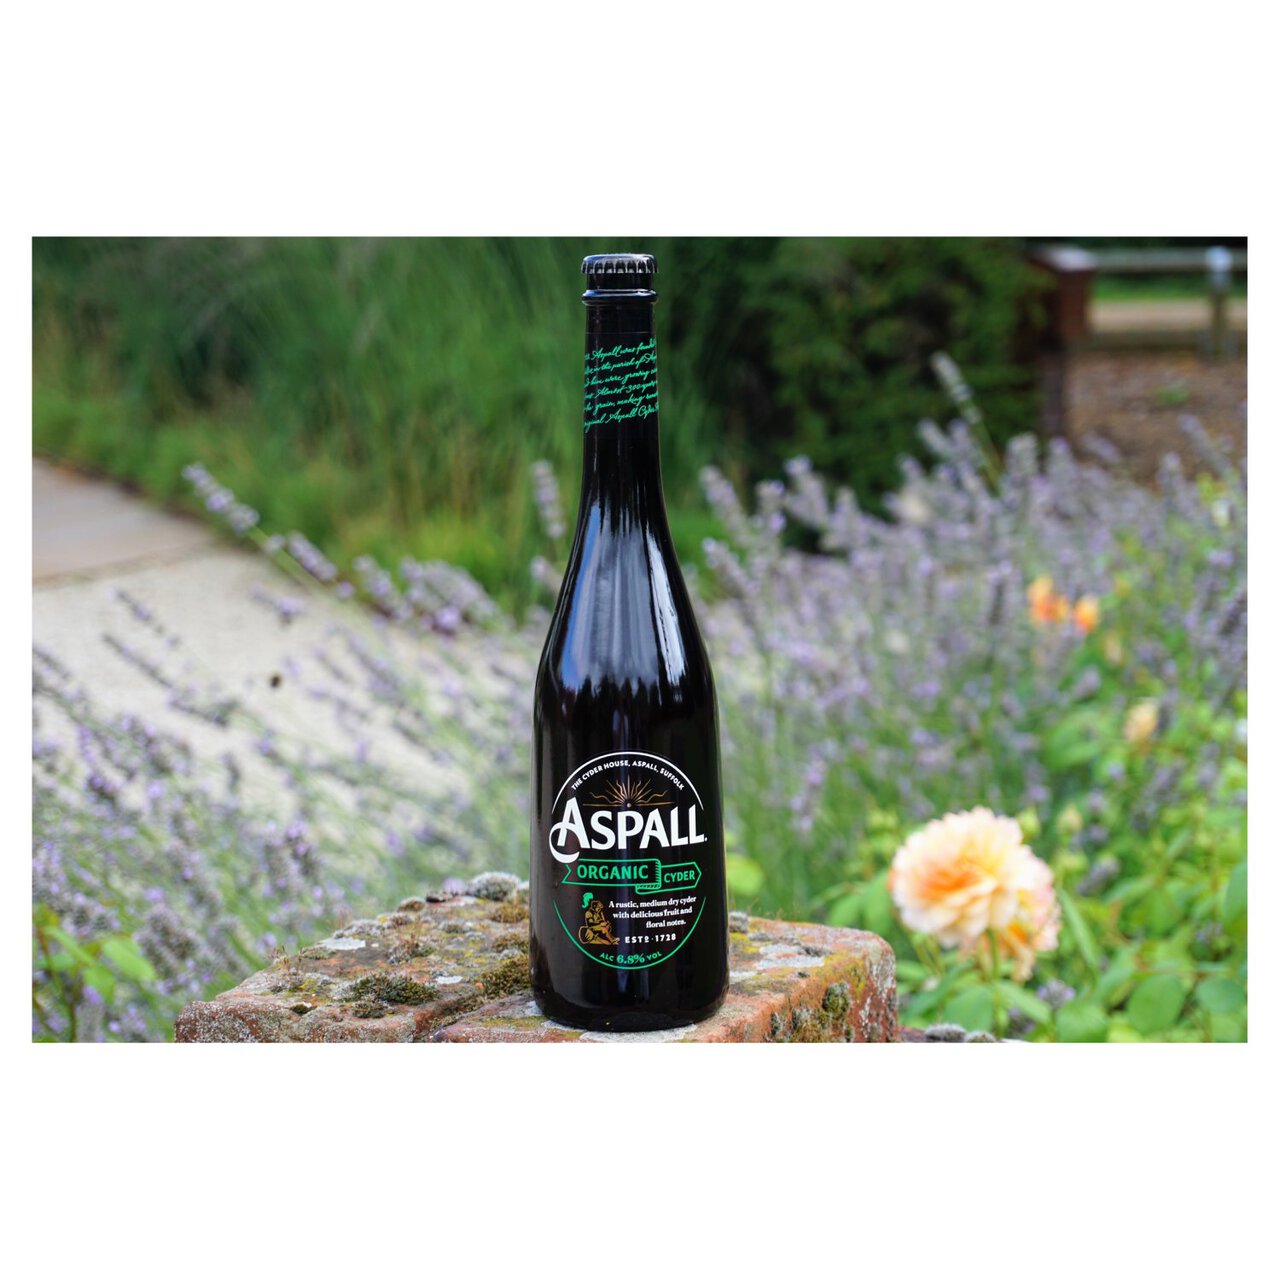 Aspall Suffolk Organic Cyder 500ml